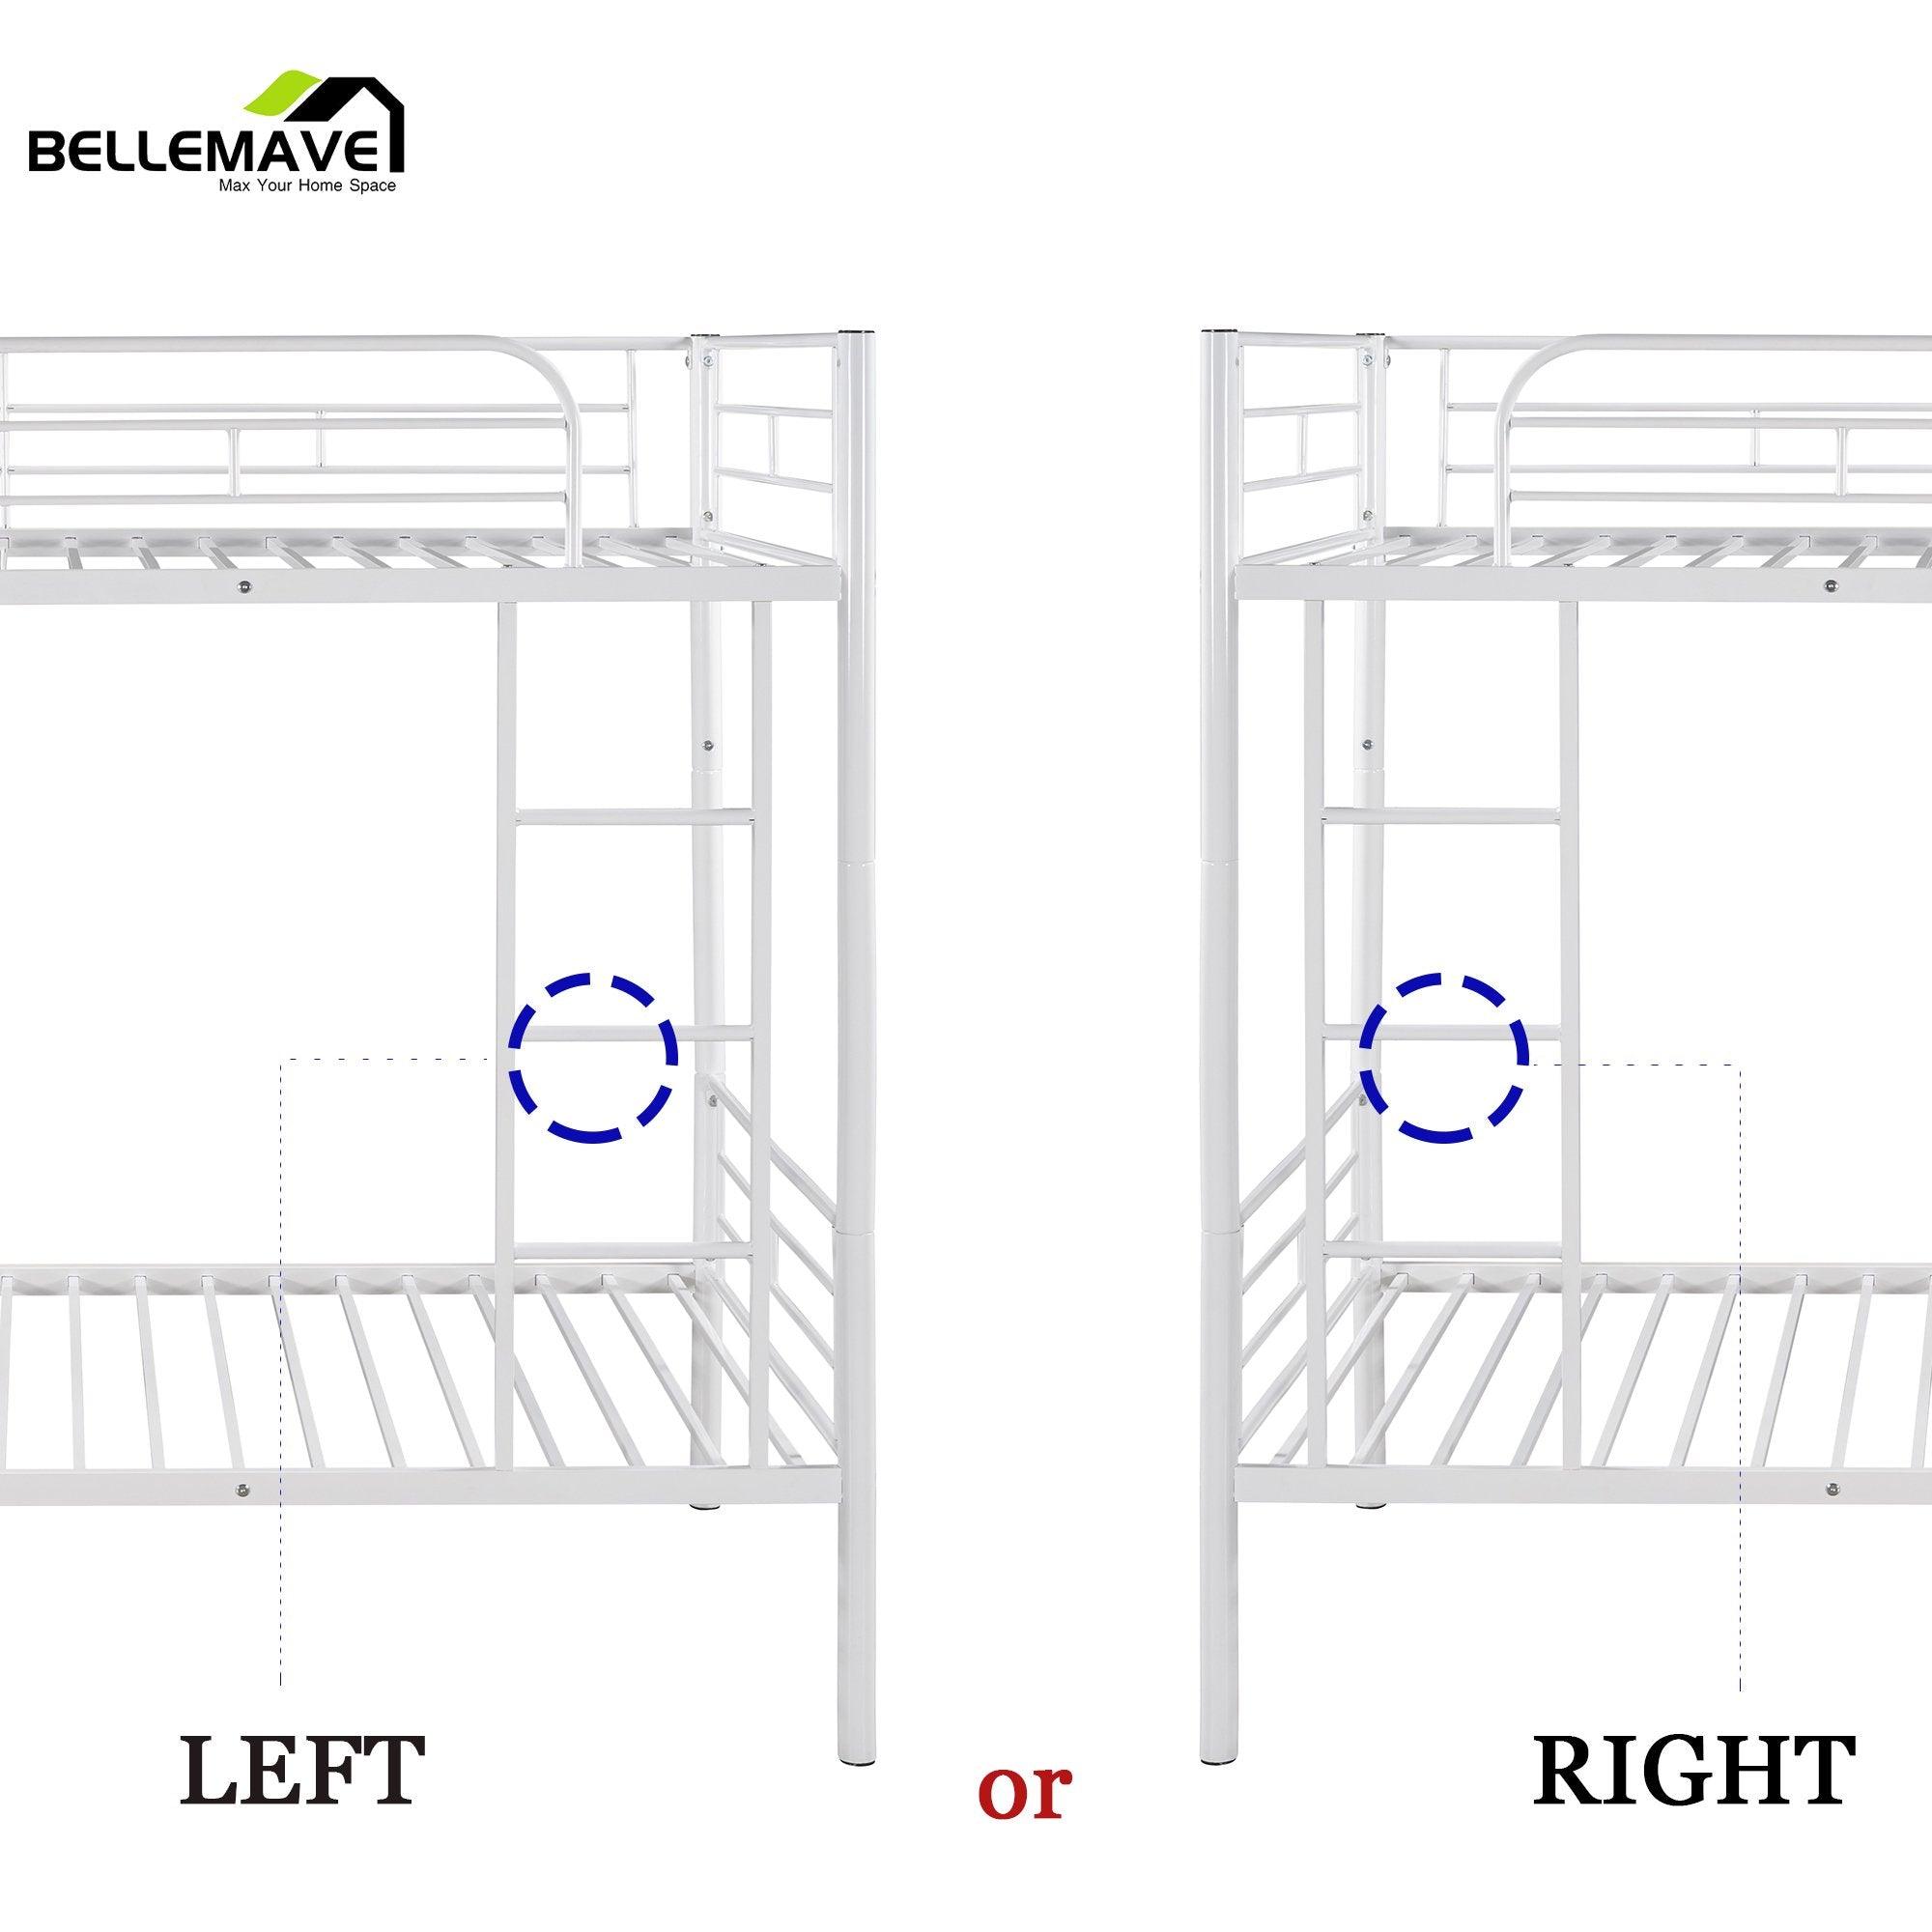 Bellemave Twin Over Twin Metal Bunk Bed - Bellemave